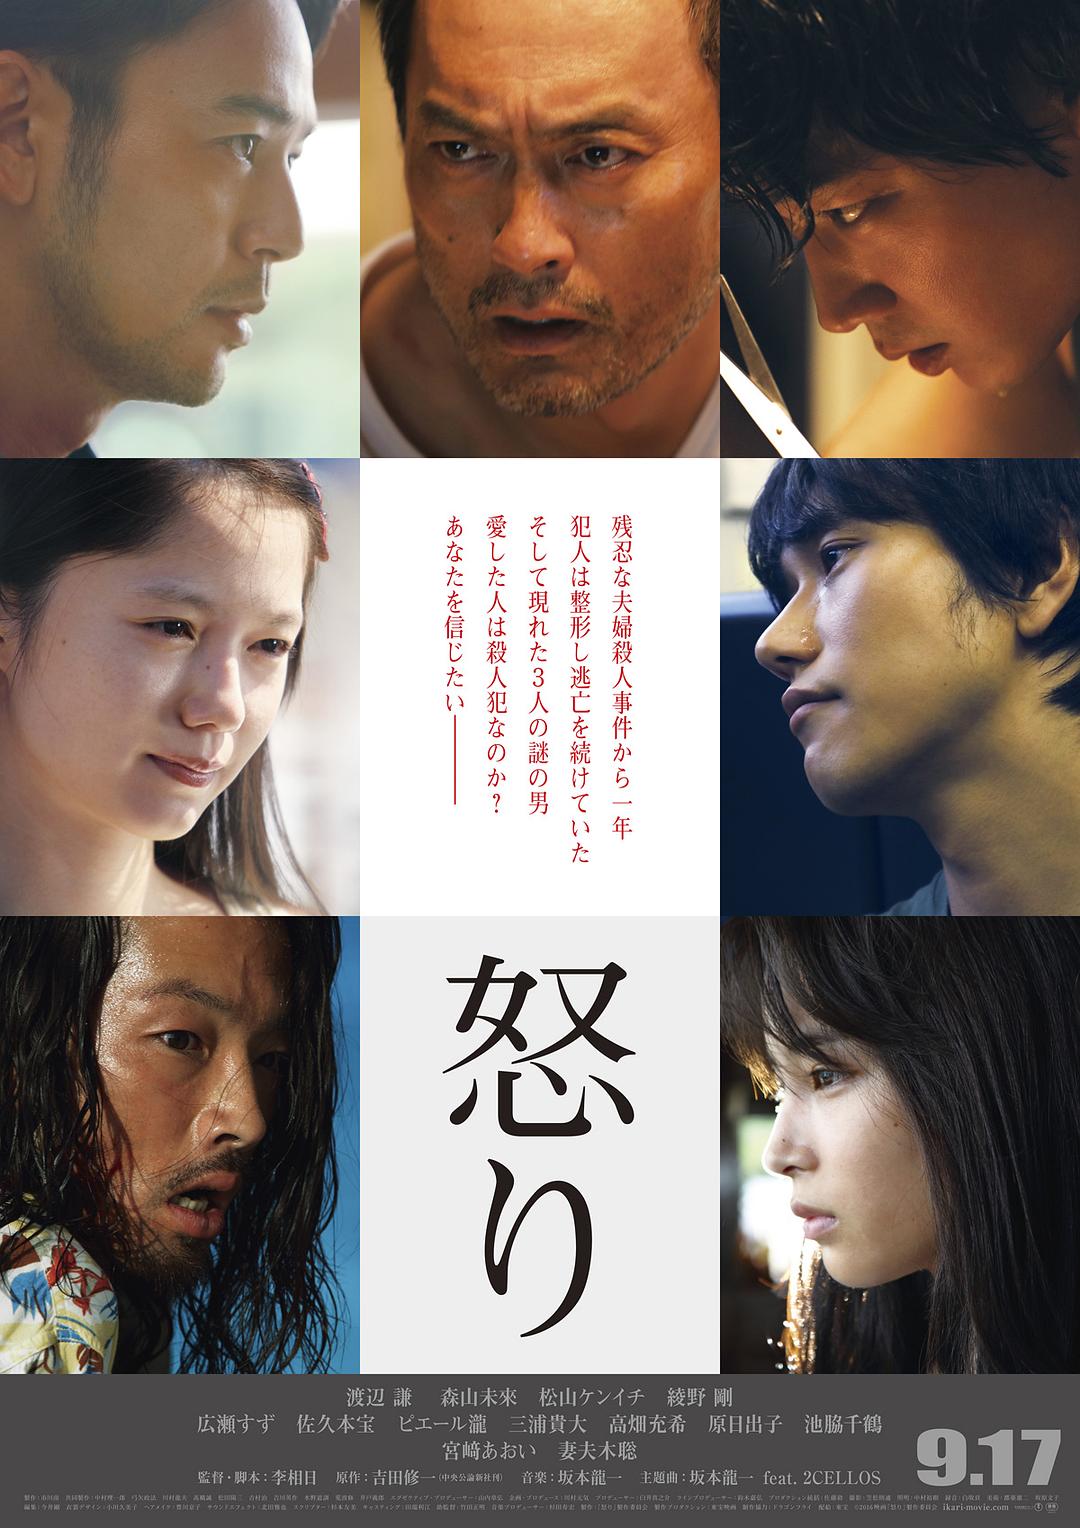 想看的日本电影 高分经典想看的日本电影 迅雷电影精选影单